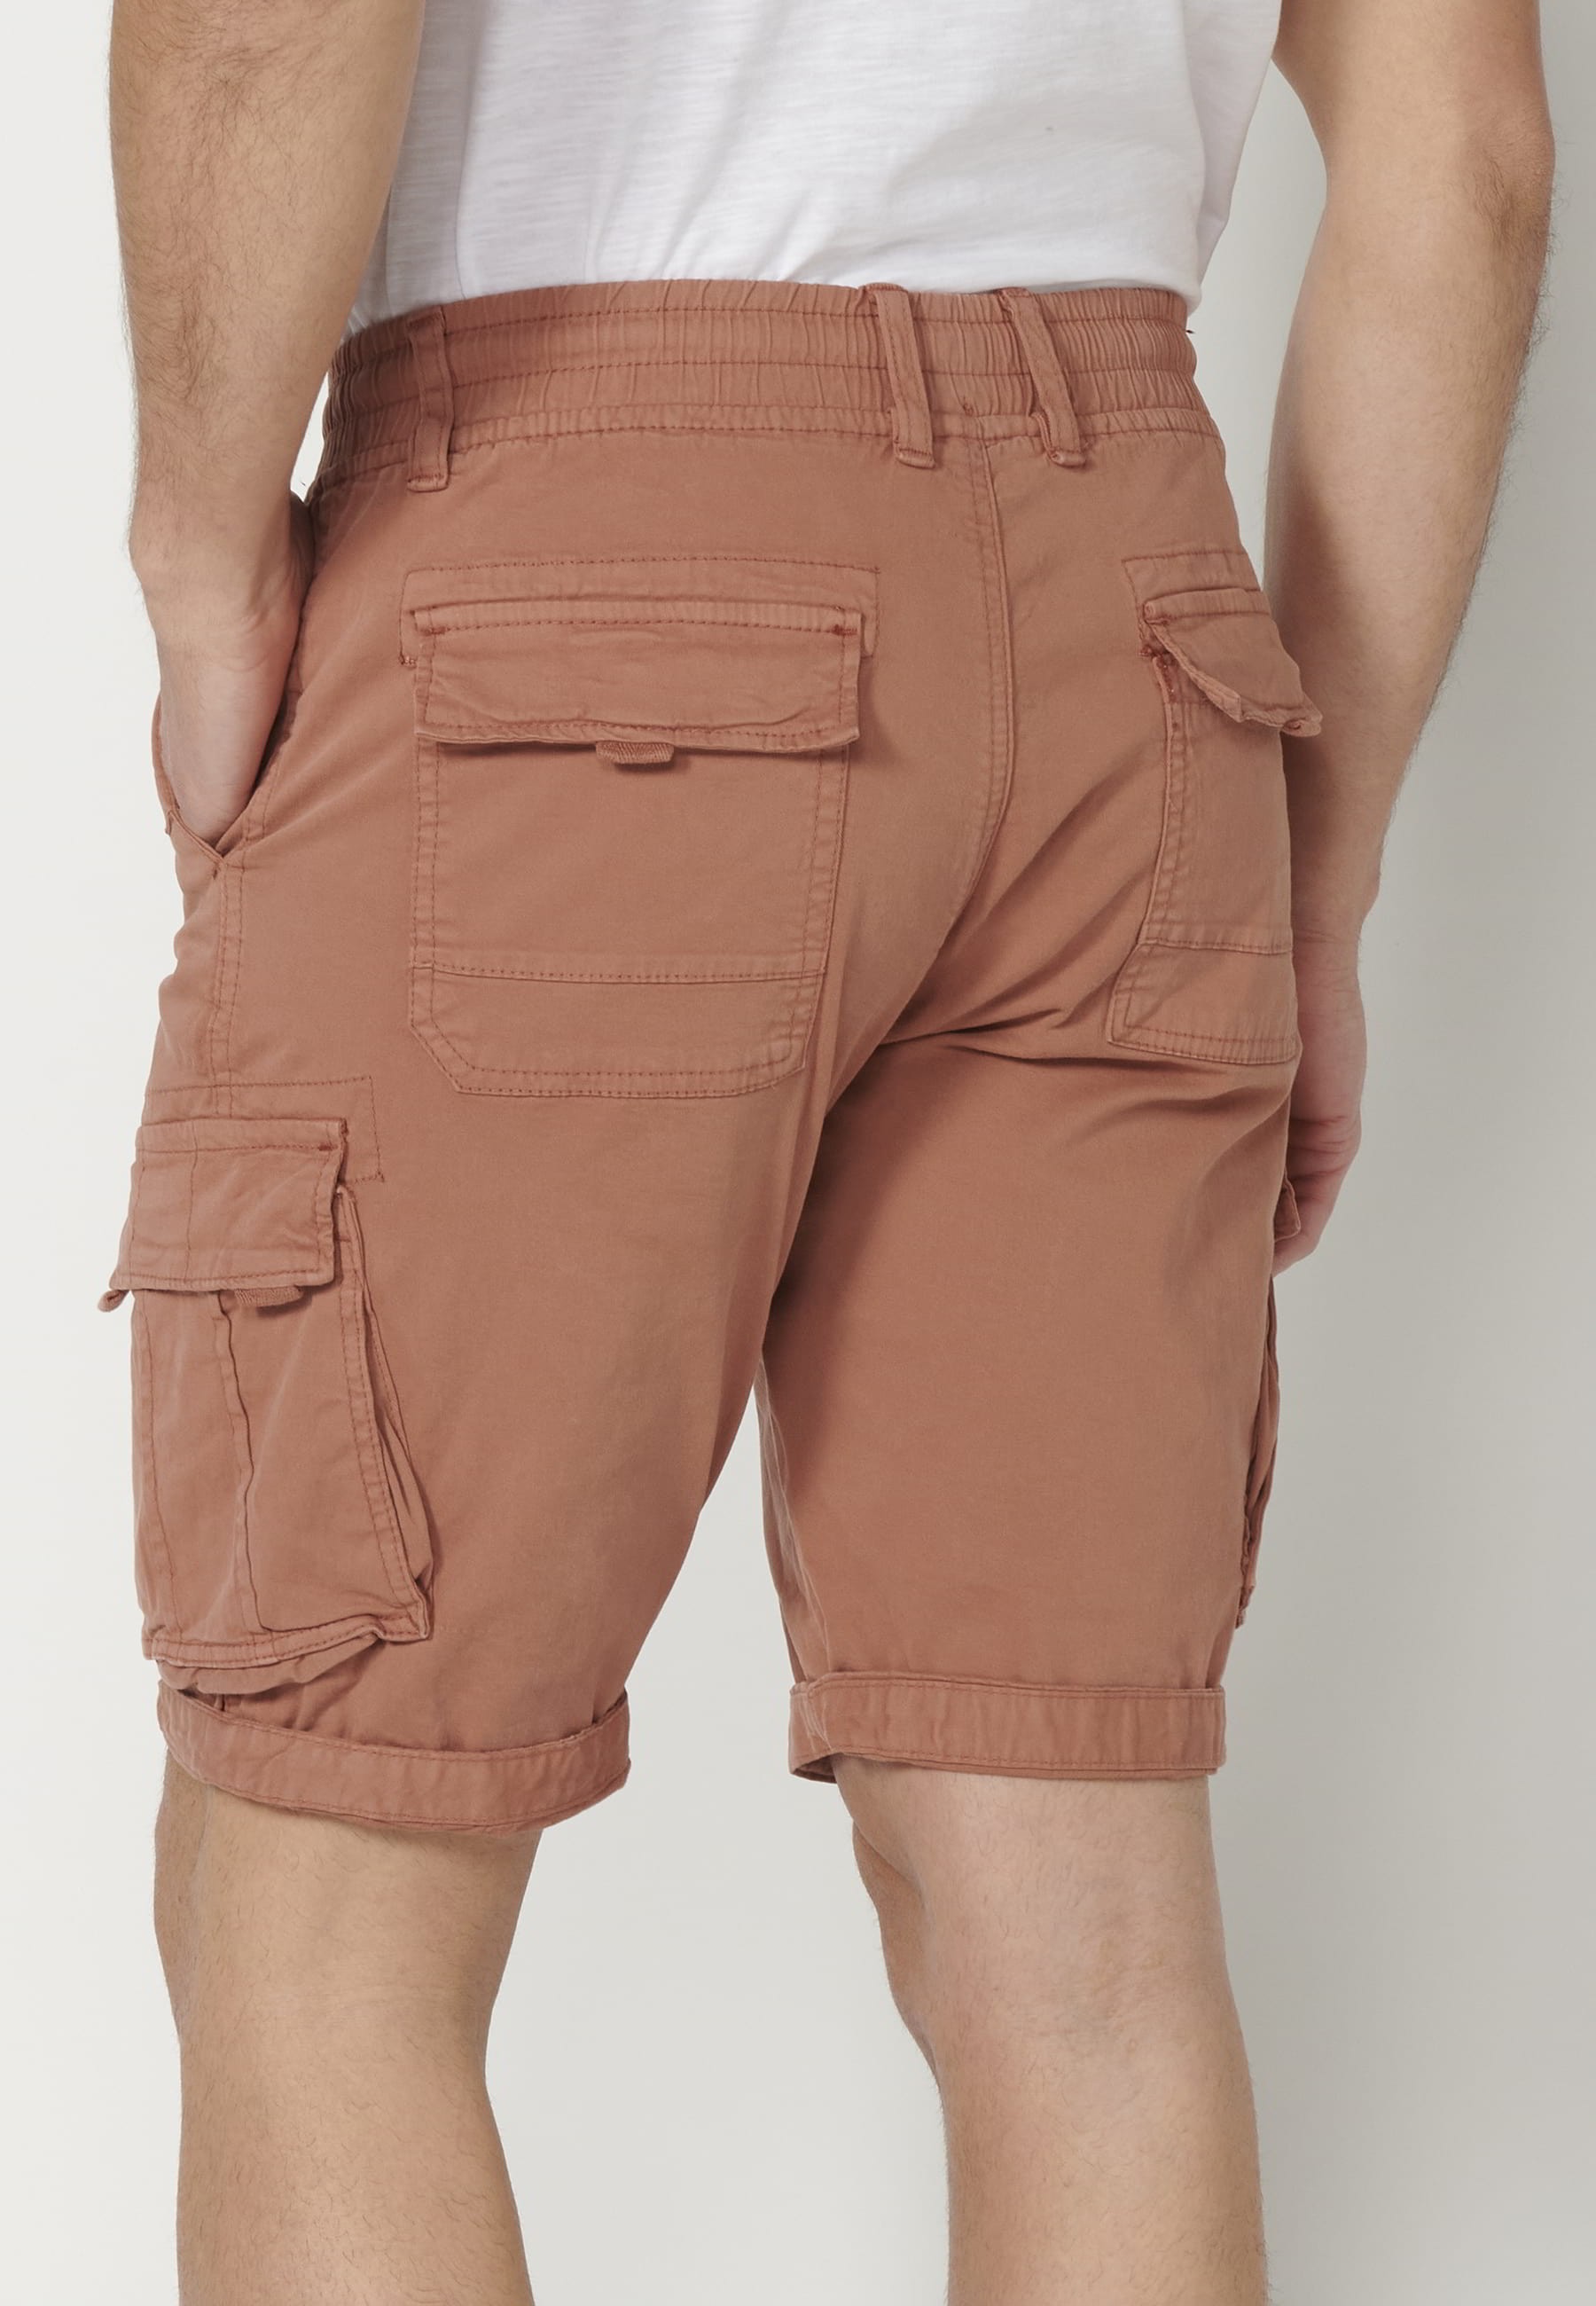 Pantalons curts Bermuda estil càrrec color Teula per a Home